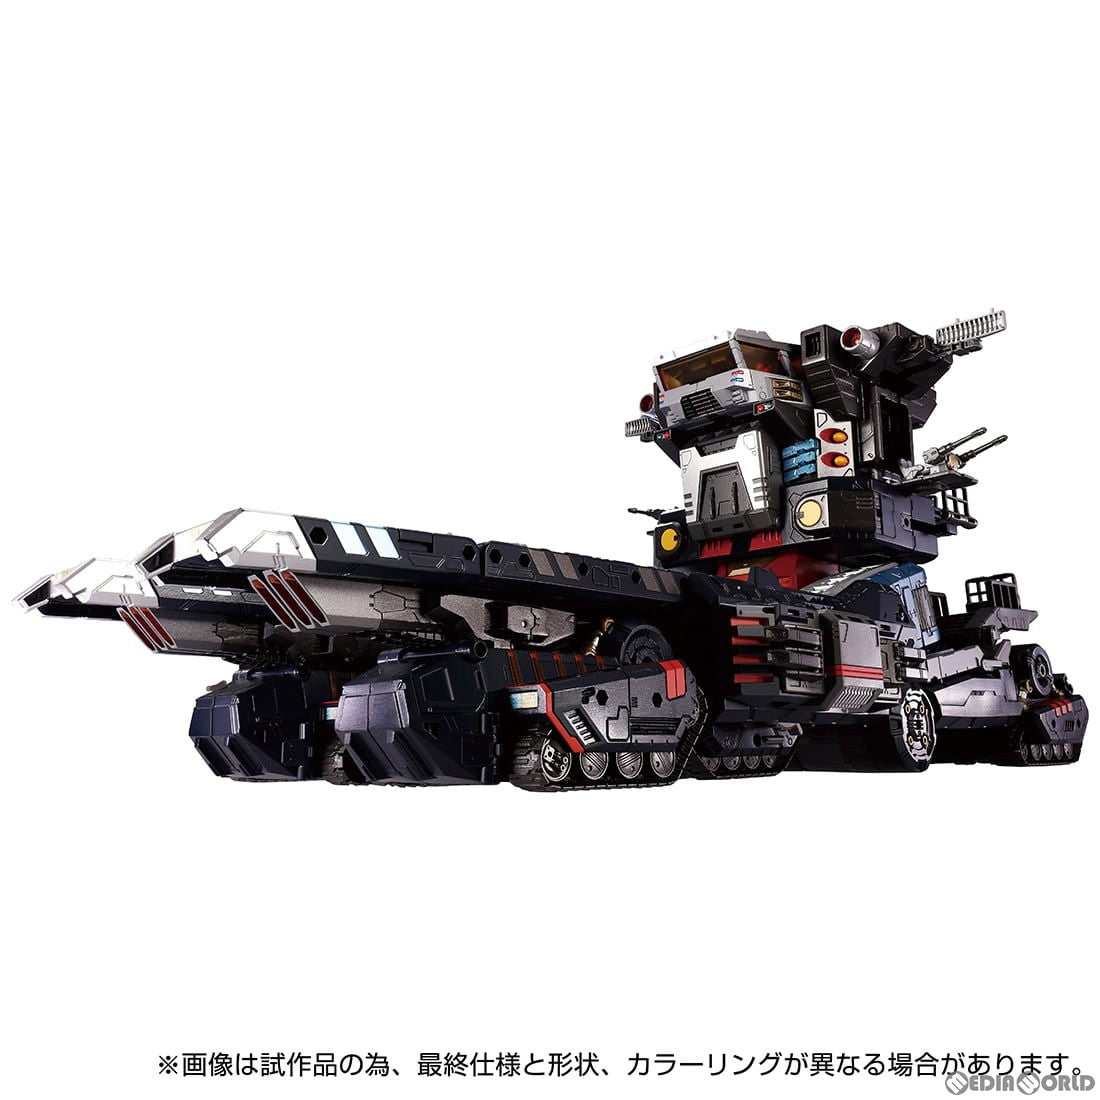 【新品即納】[TOY]ダイアクロン DA-95 ロボットベース:陸上機動戦艦 グランドダイオン 完成トイ タカラトミー(20230401)